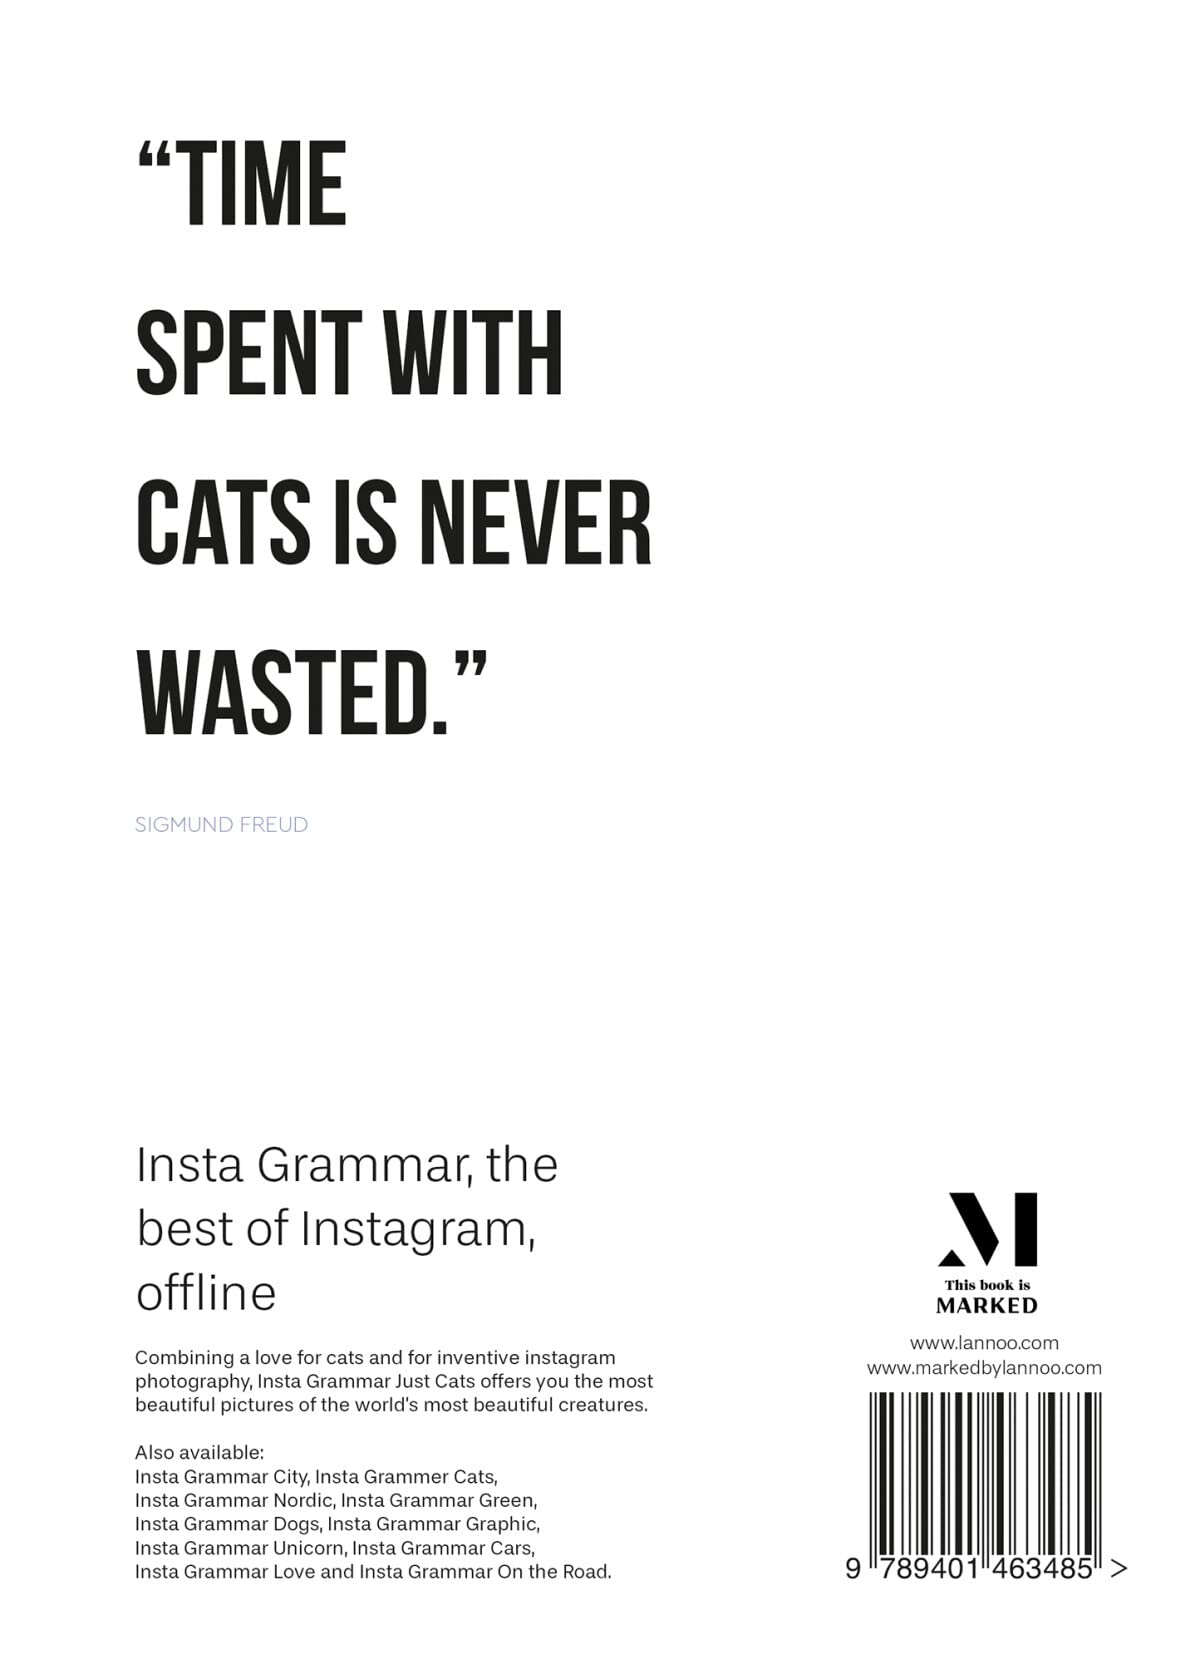 INSTA GRAMMAR JUST CATS